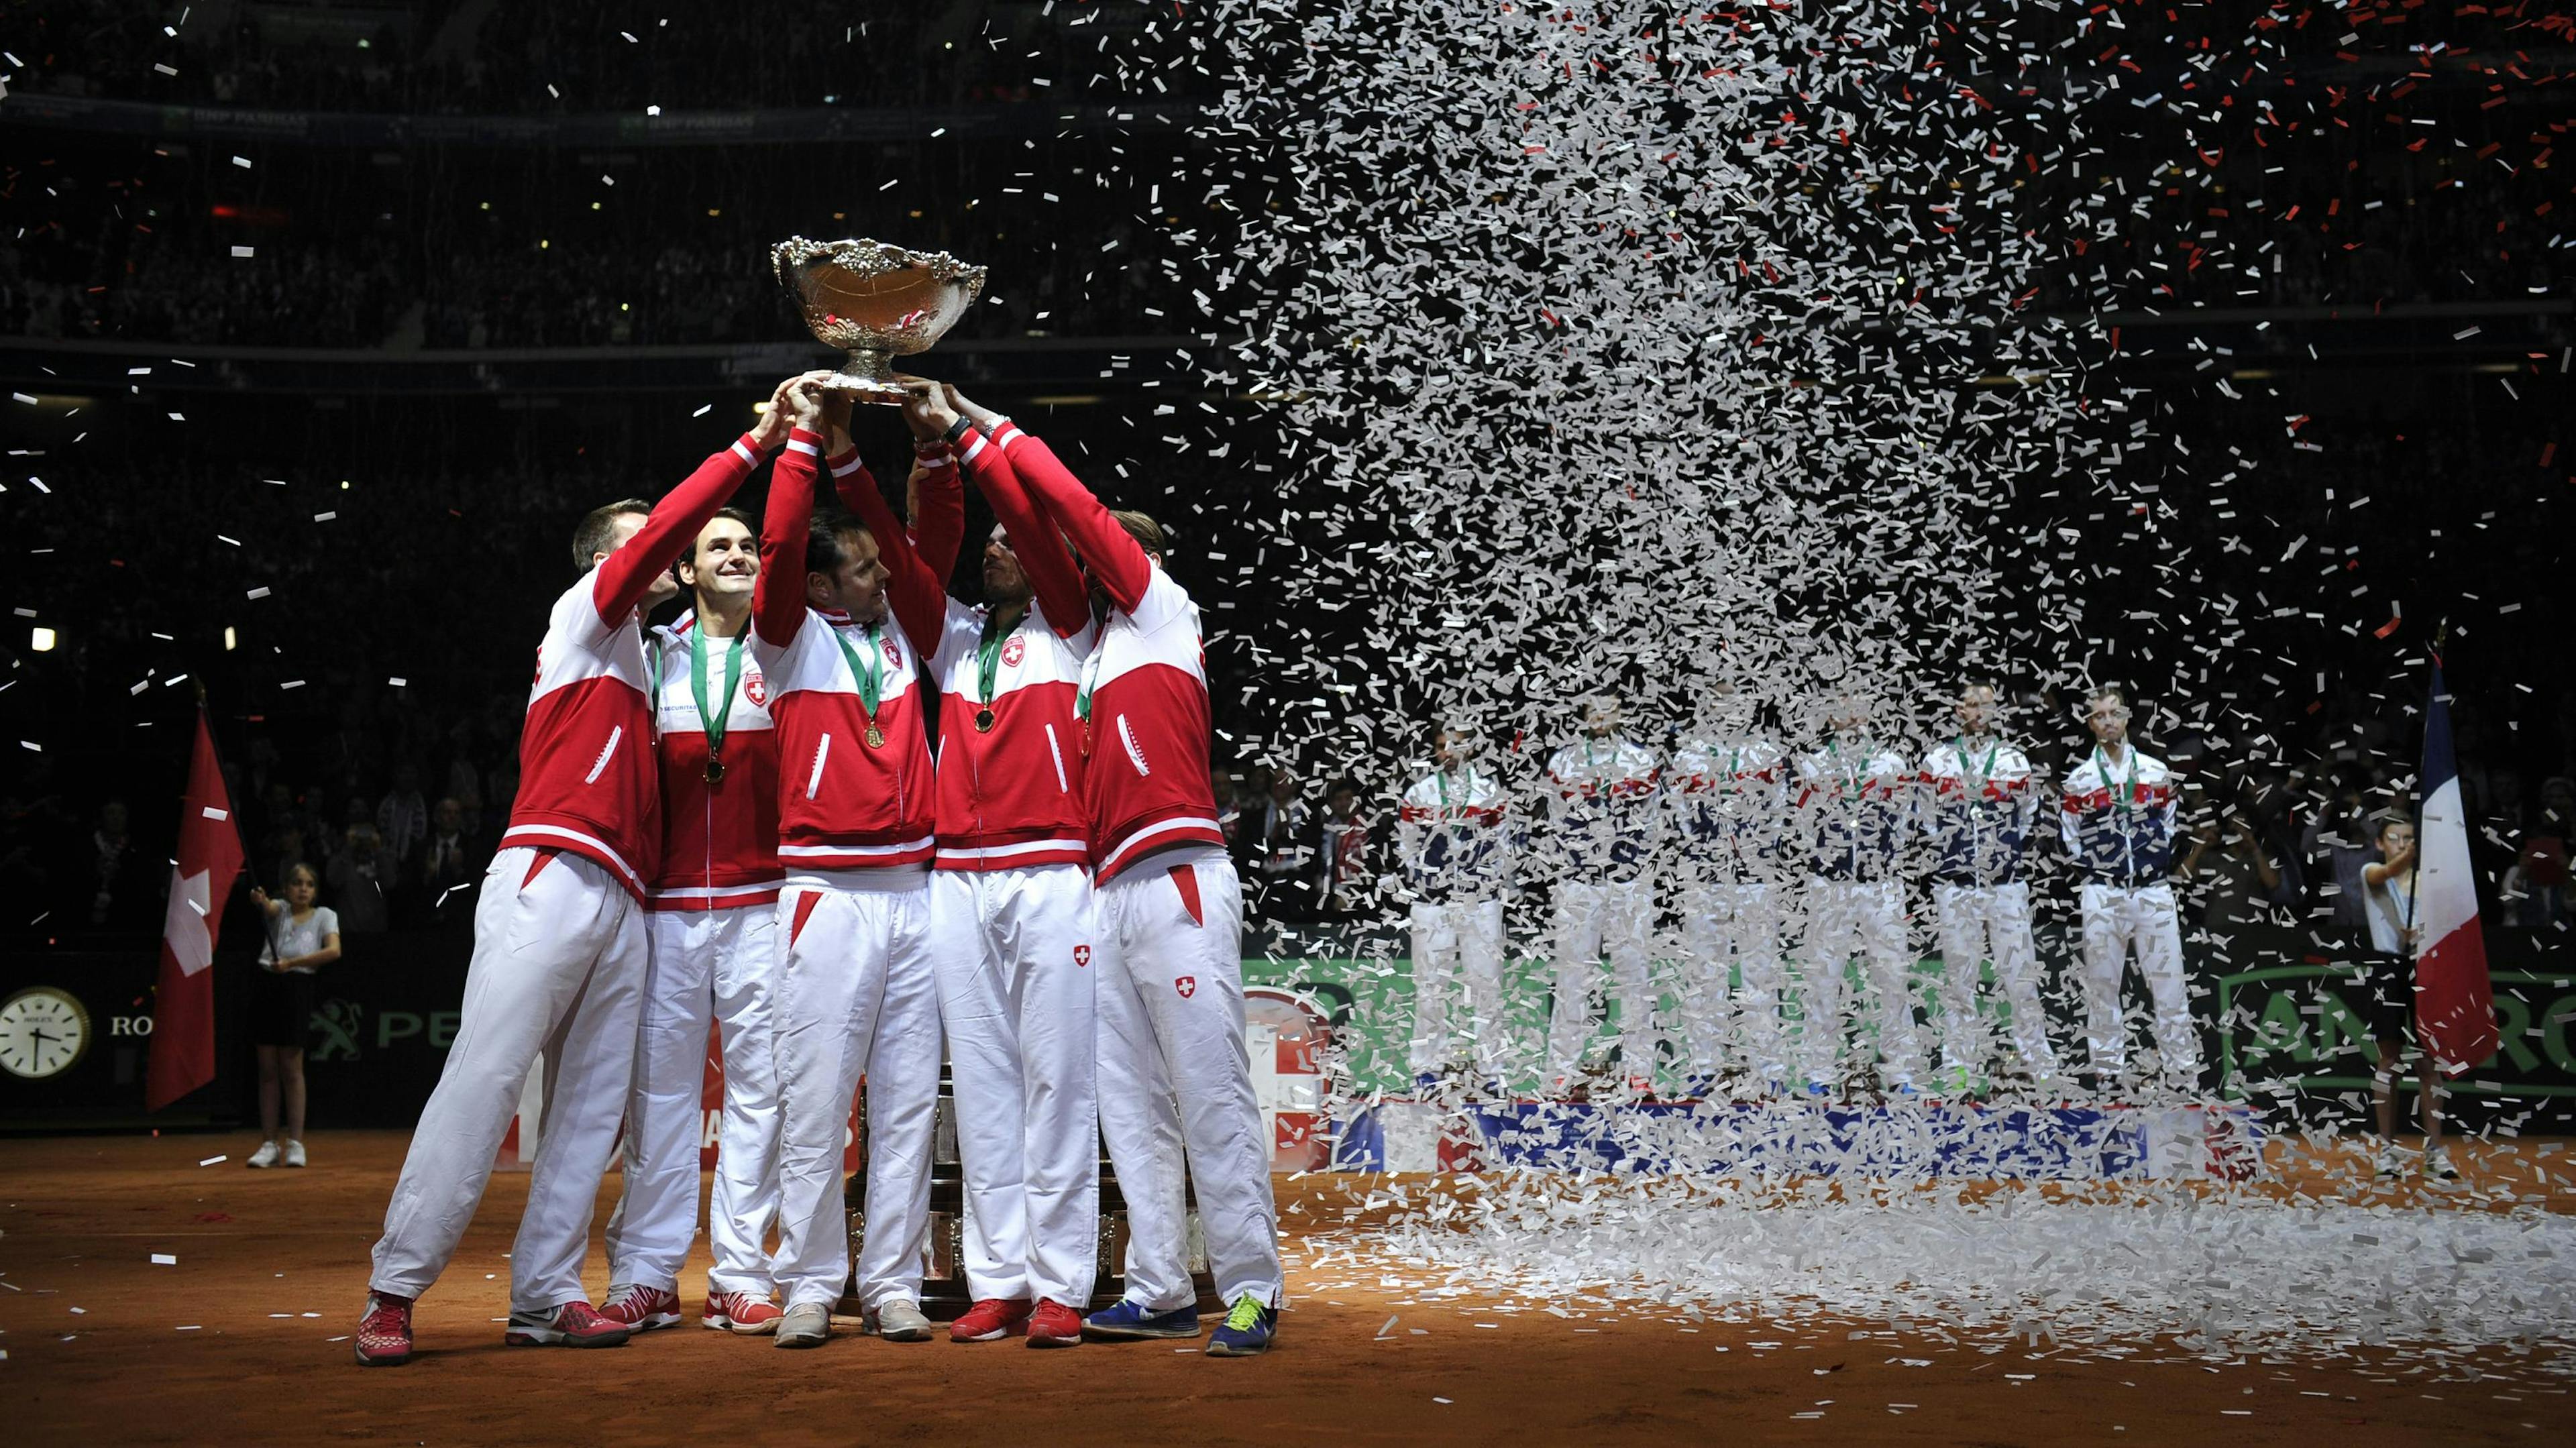 Malgré une belle résistance des Français, c'est bien la Suisse qui remporte l'édition 2016 de la Coupe Davis.